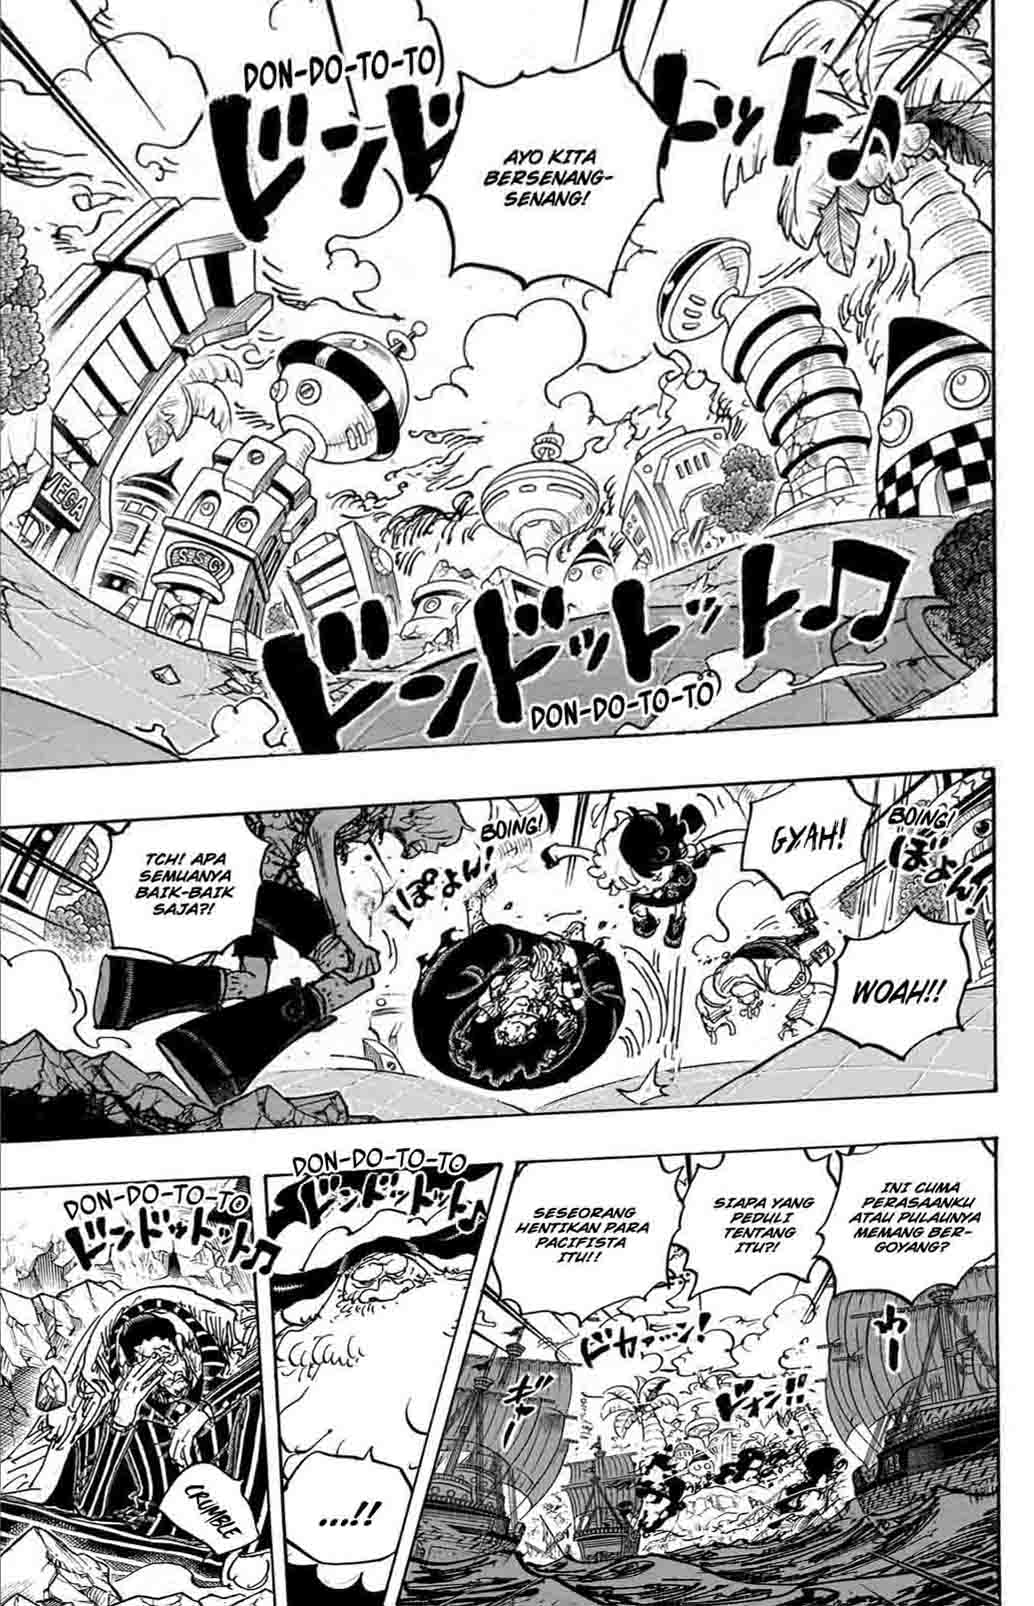 Baca manga komik One Piece Berwarna Bahasa Indonesia HD Chapter 1106